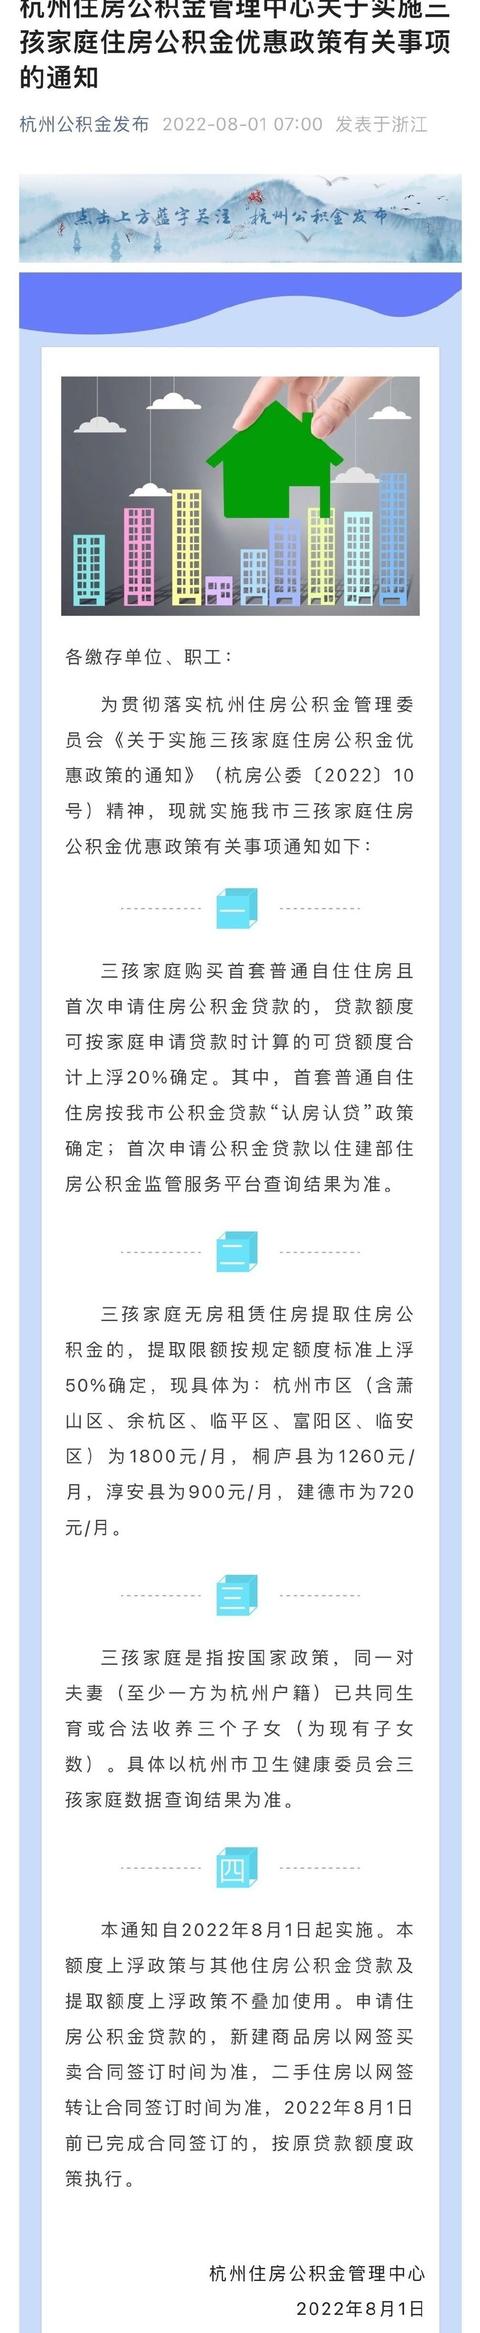 杭州家庭公积金贷款最高额度「杭州家庭公积金贷款额度计算」